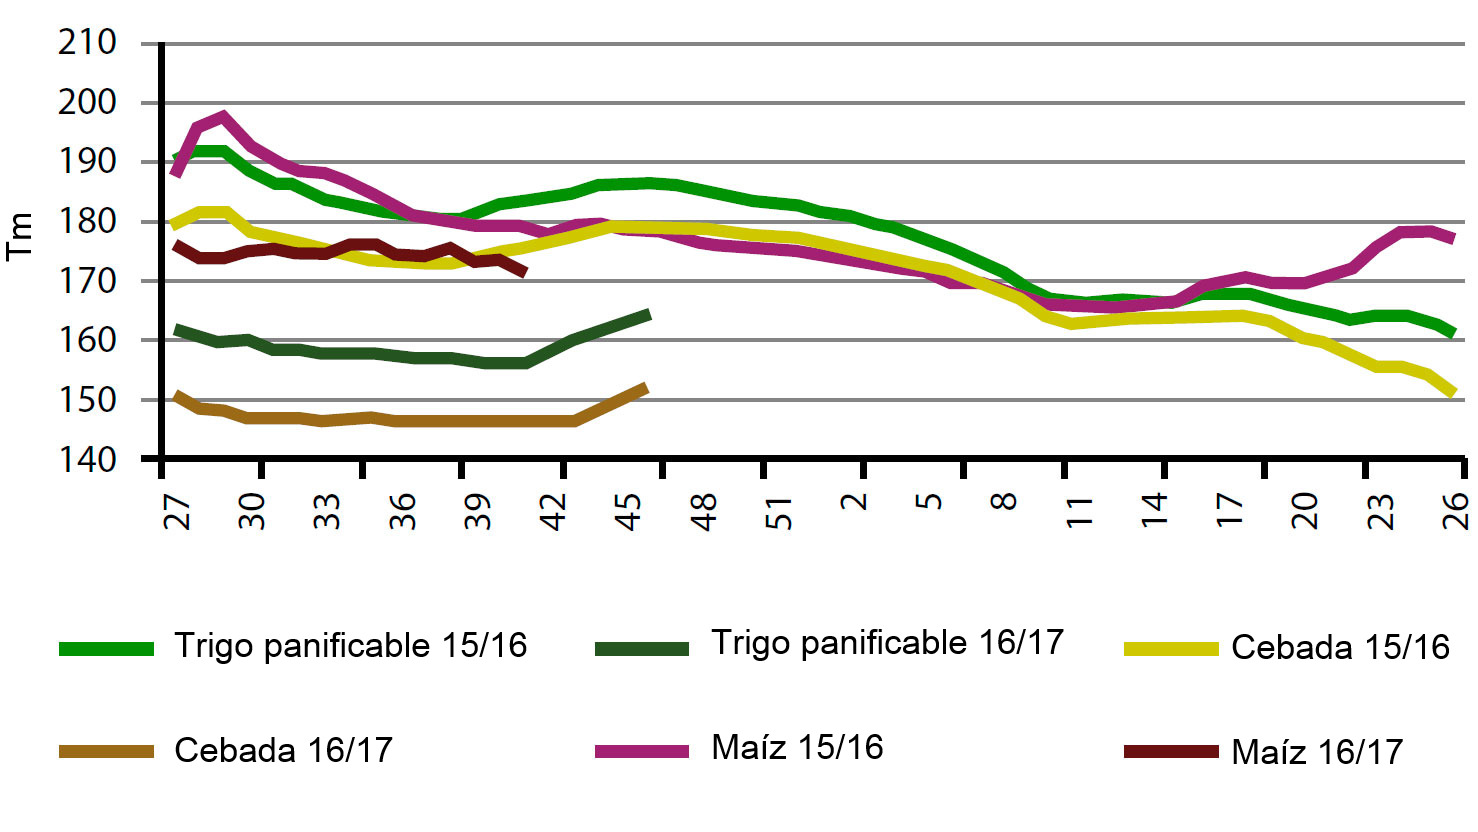 Comparativa julio-junio por semana de la evolución de los precios de cereal en España para los dos últimas campañas